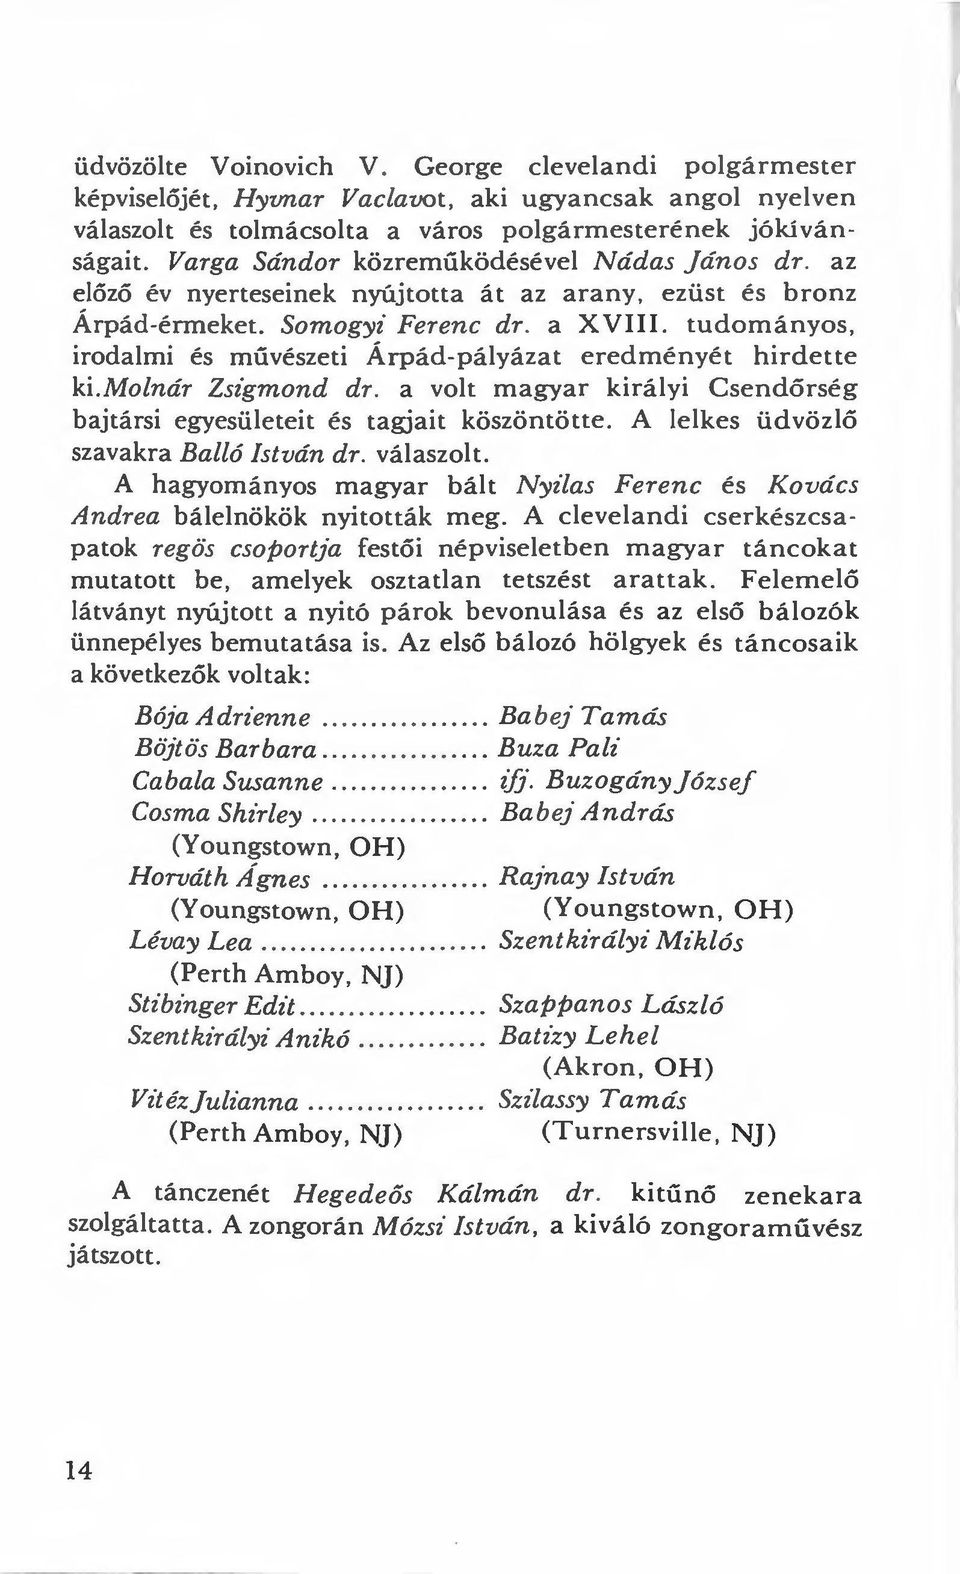 tudományos, irodalmi és művészeti Árpád-pályázat eredményé t hirdette ki.molnár Zsigmond dr. a volt magyar királyi Cs e ndőrség bajtársi egyesületeit és tagjait köszöntötte.